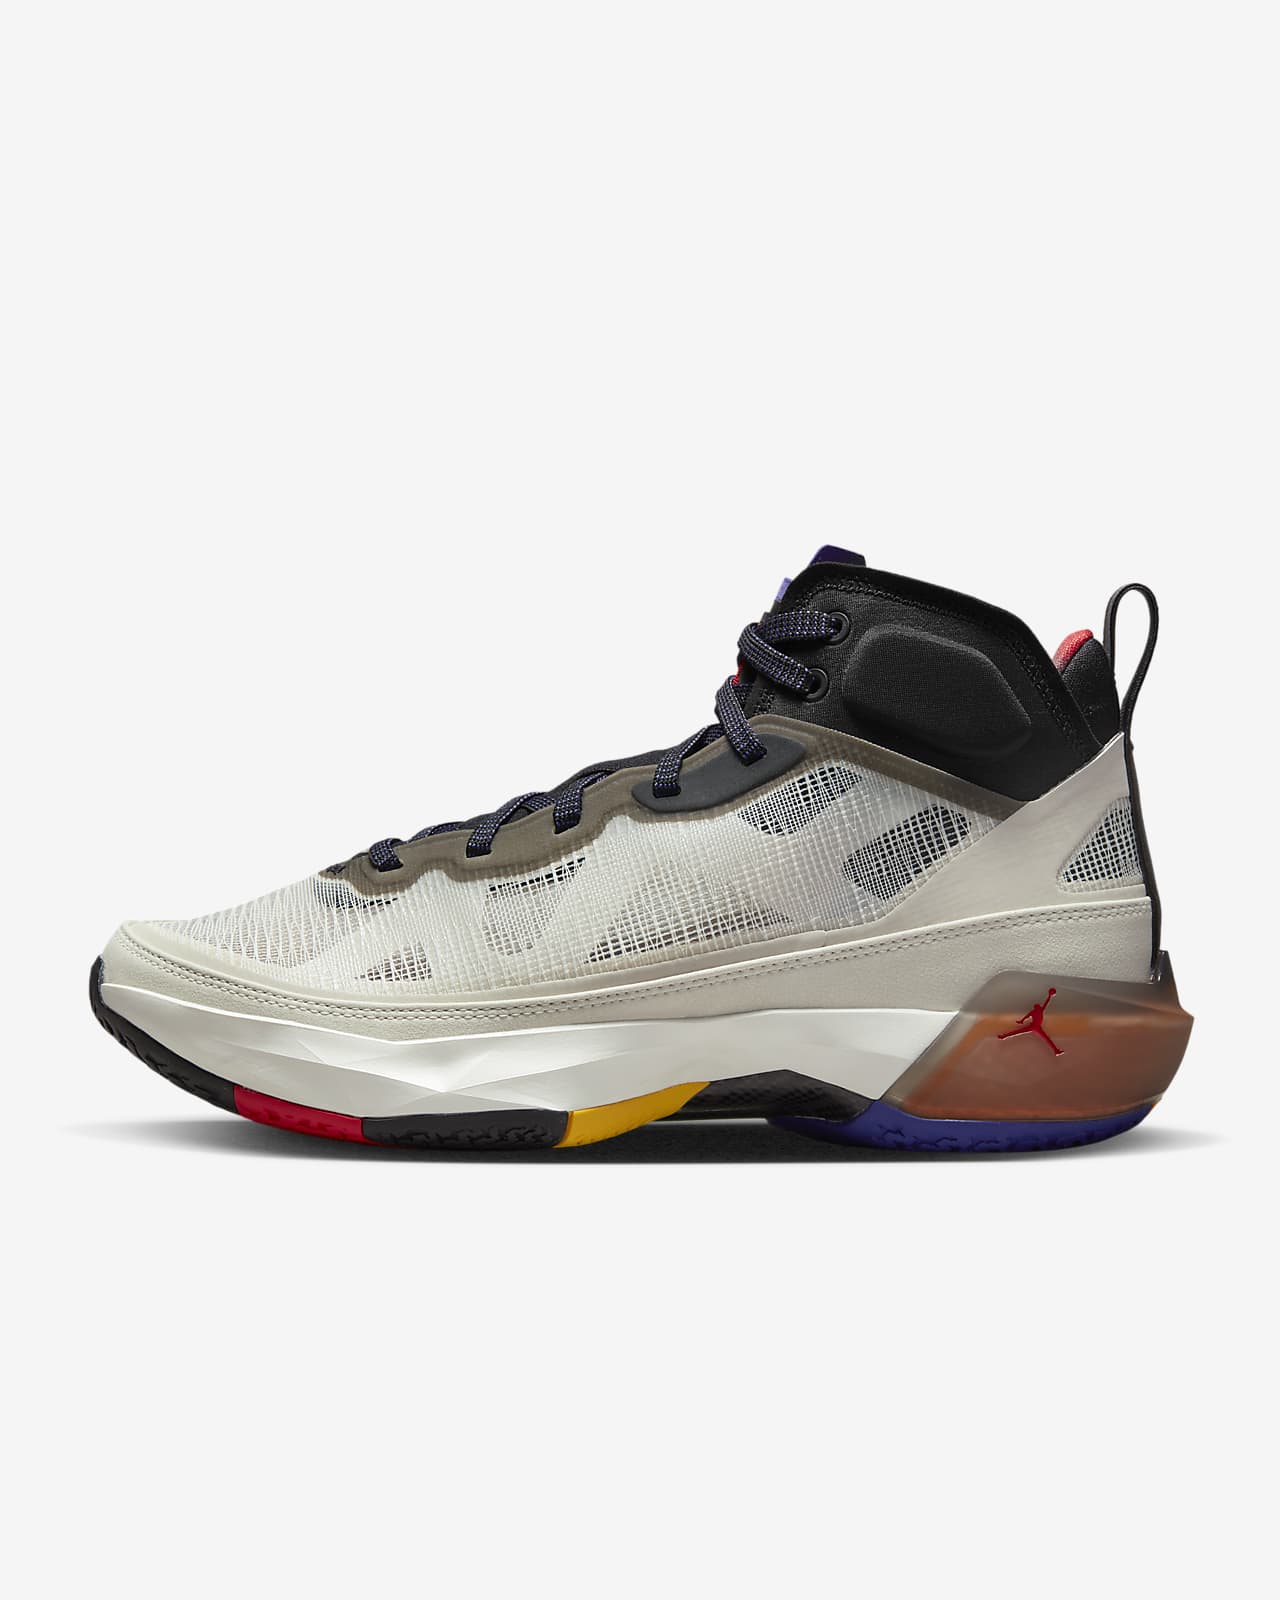 Air Jordan XXXVII Zapatillas de baloncesto - Hombre